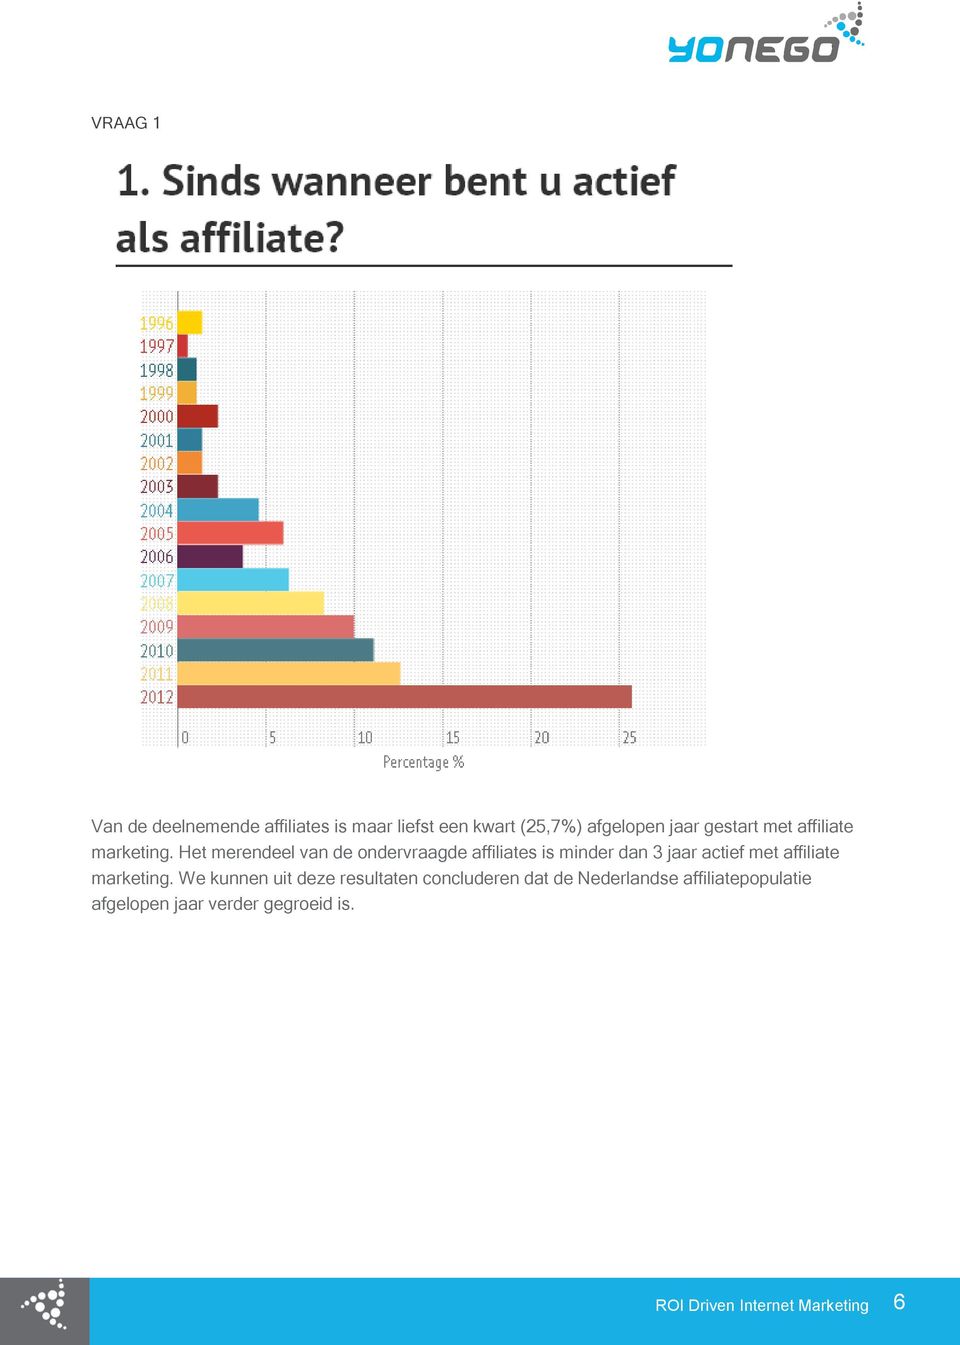 Het merendeel van de ondervraagde affiliates is minder dan 3 jaar actief met affiliate